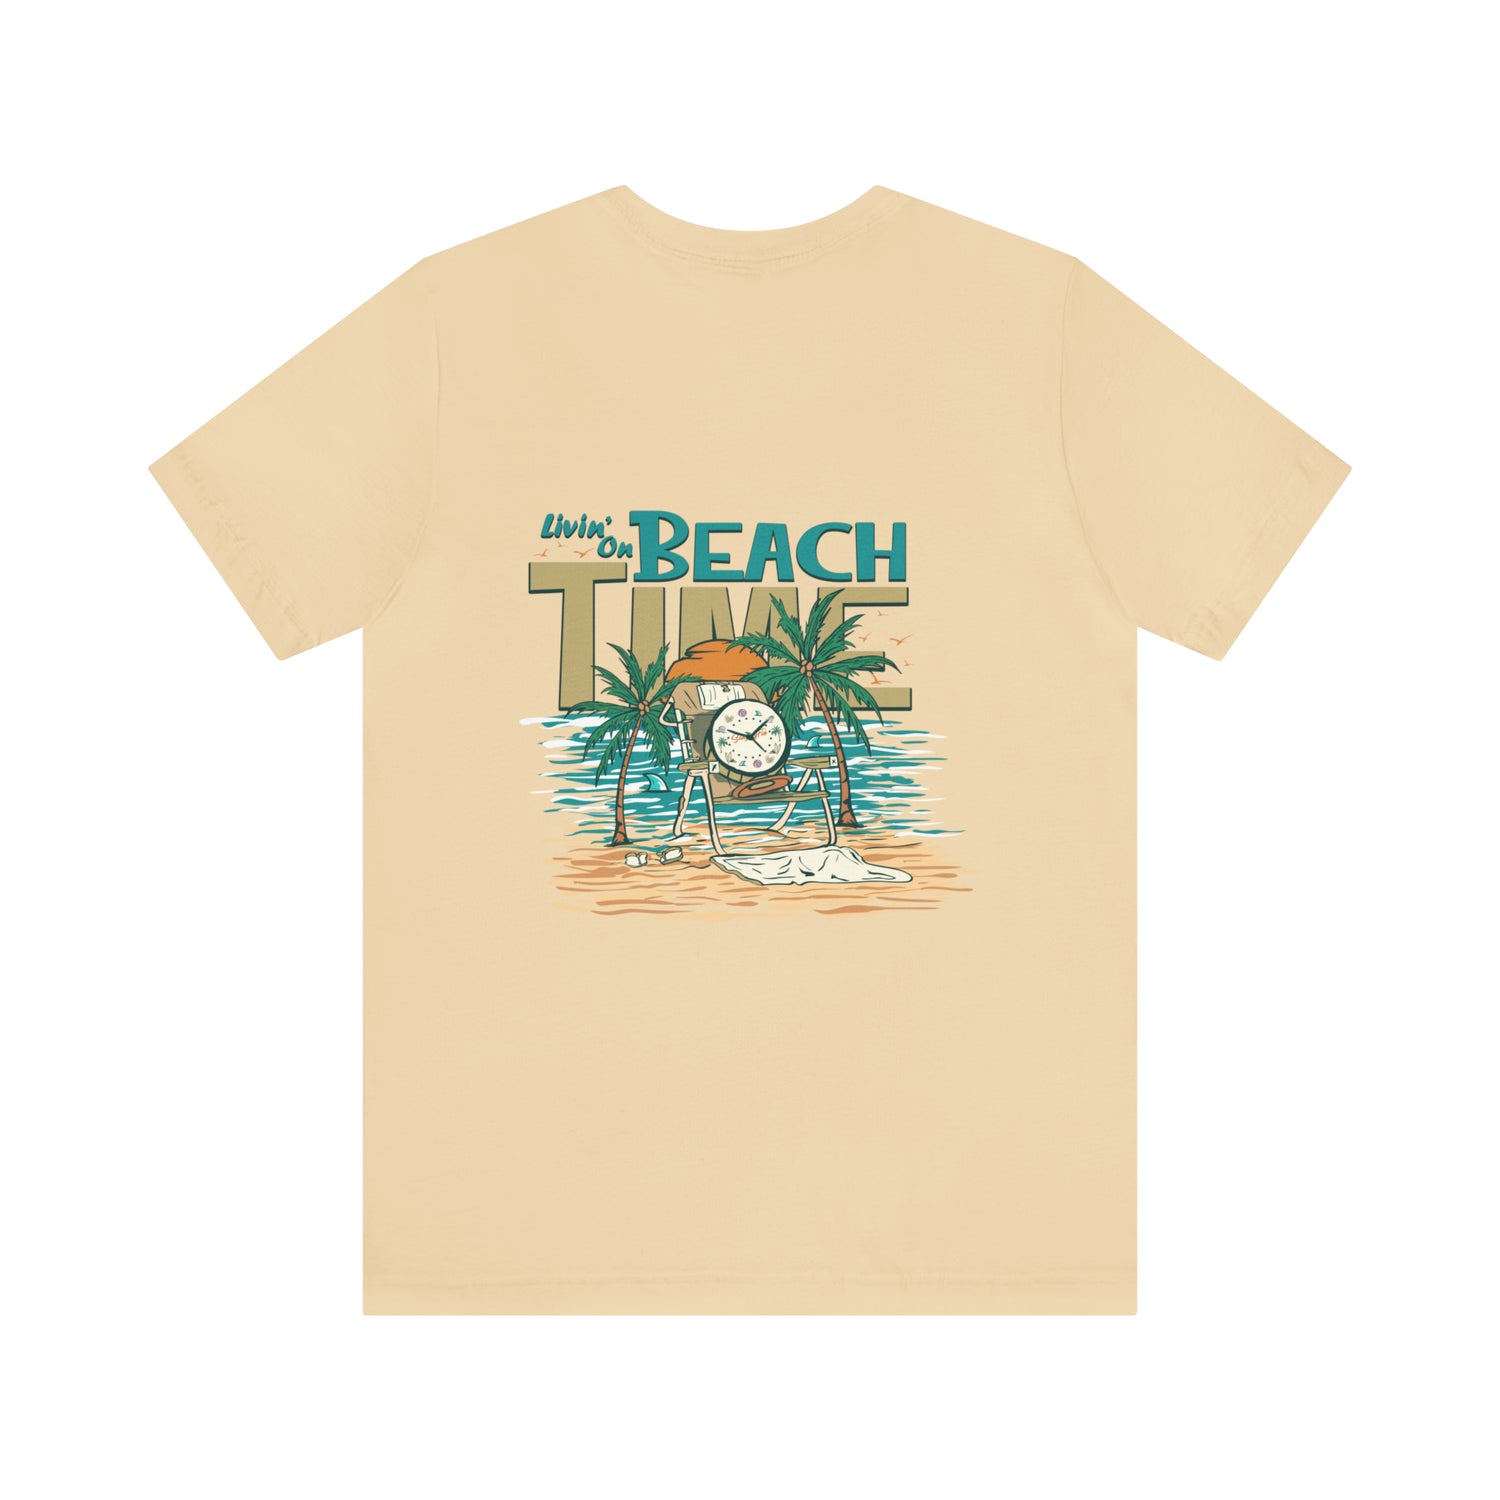 On Beach Beach Livin\' Time – Sandy Tee Apparel Unisex Fin Short Sleeve